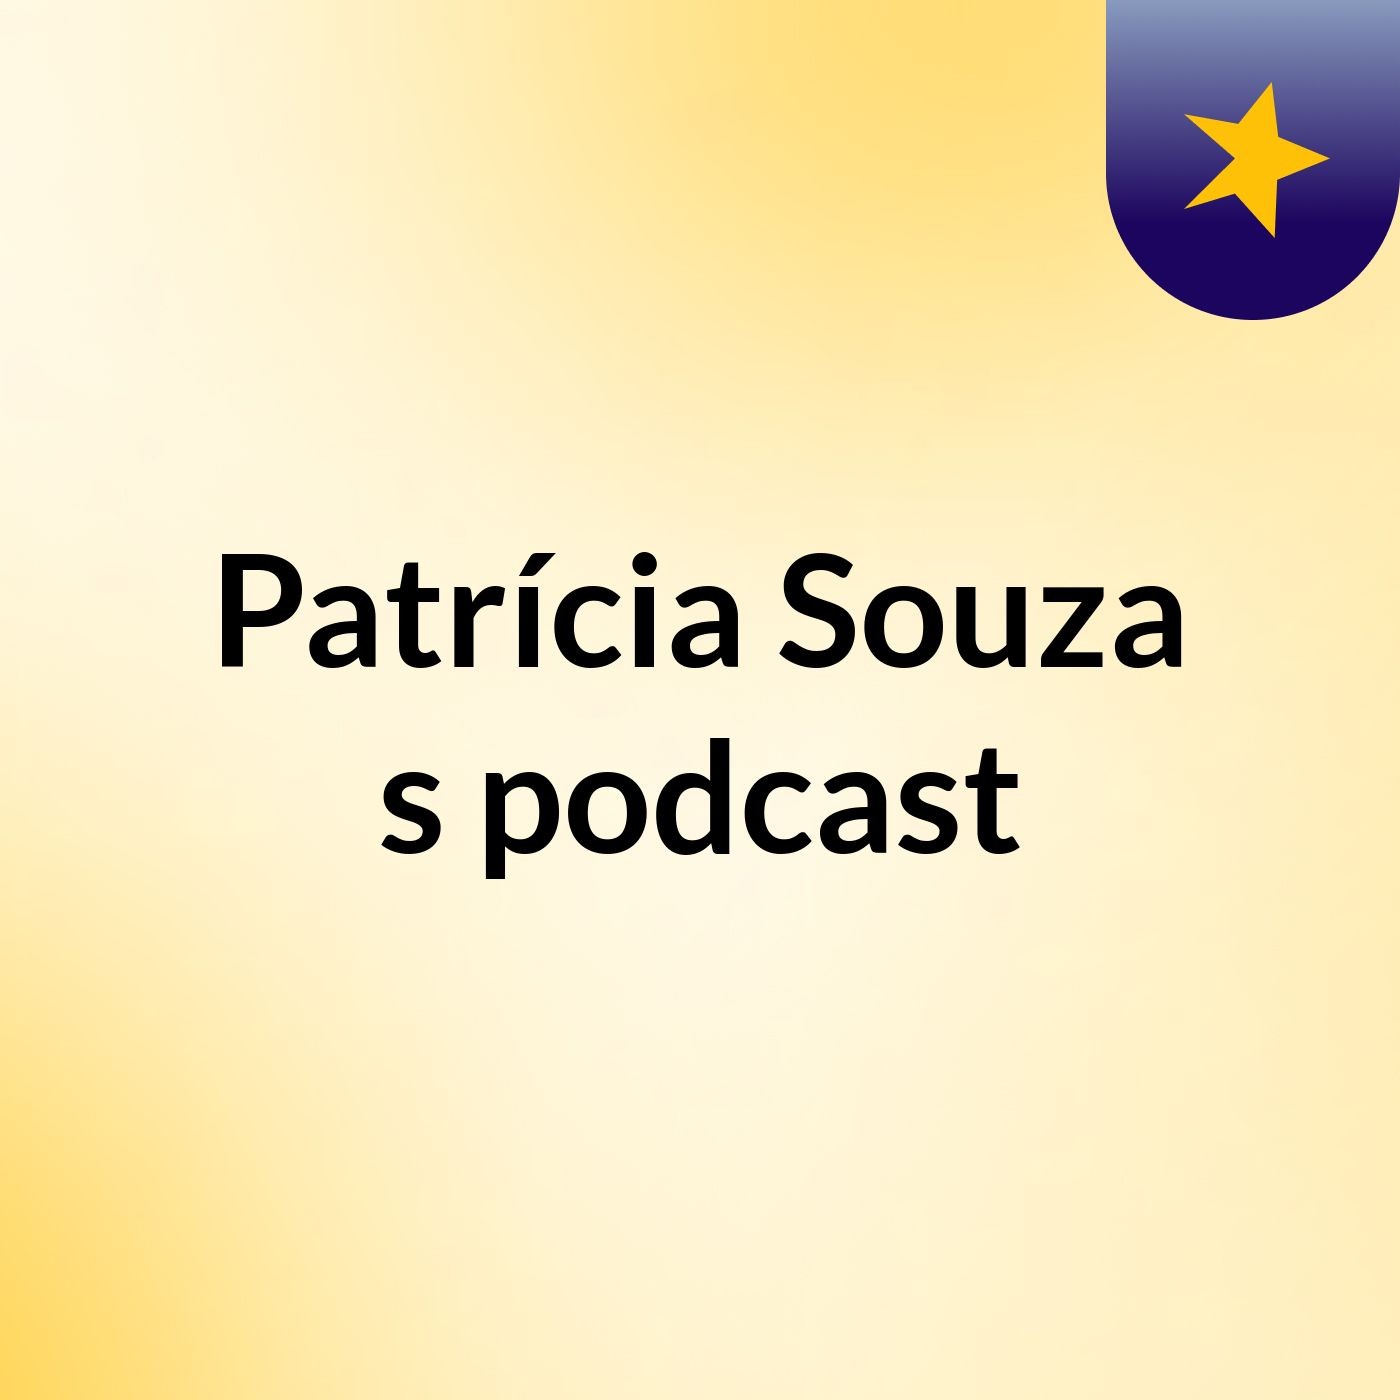 Patrícia Souza's podcast